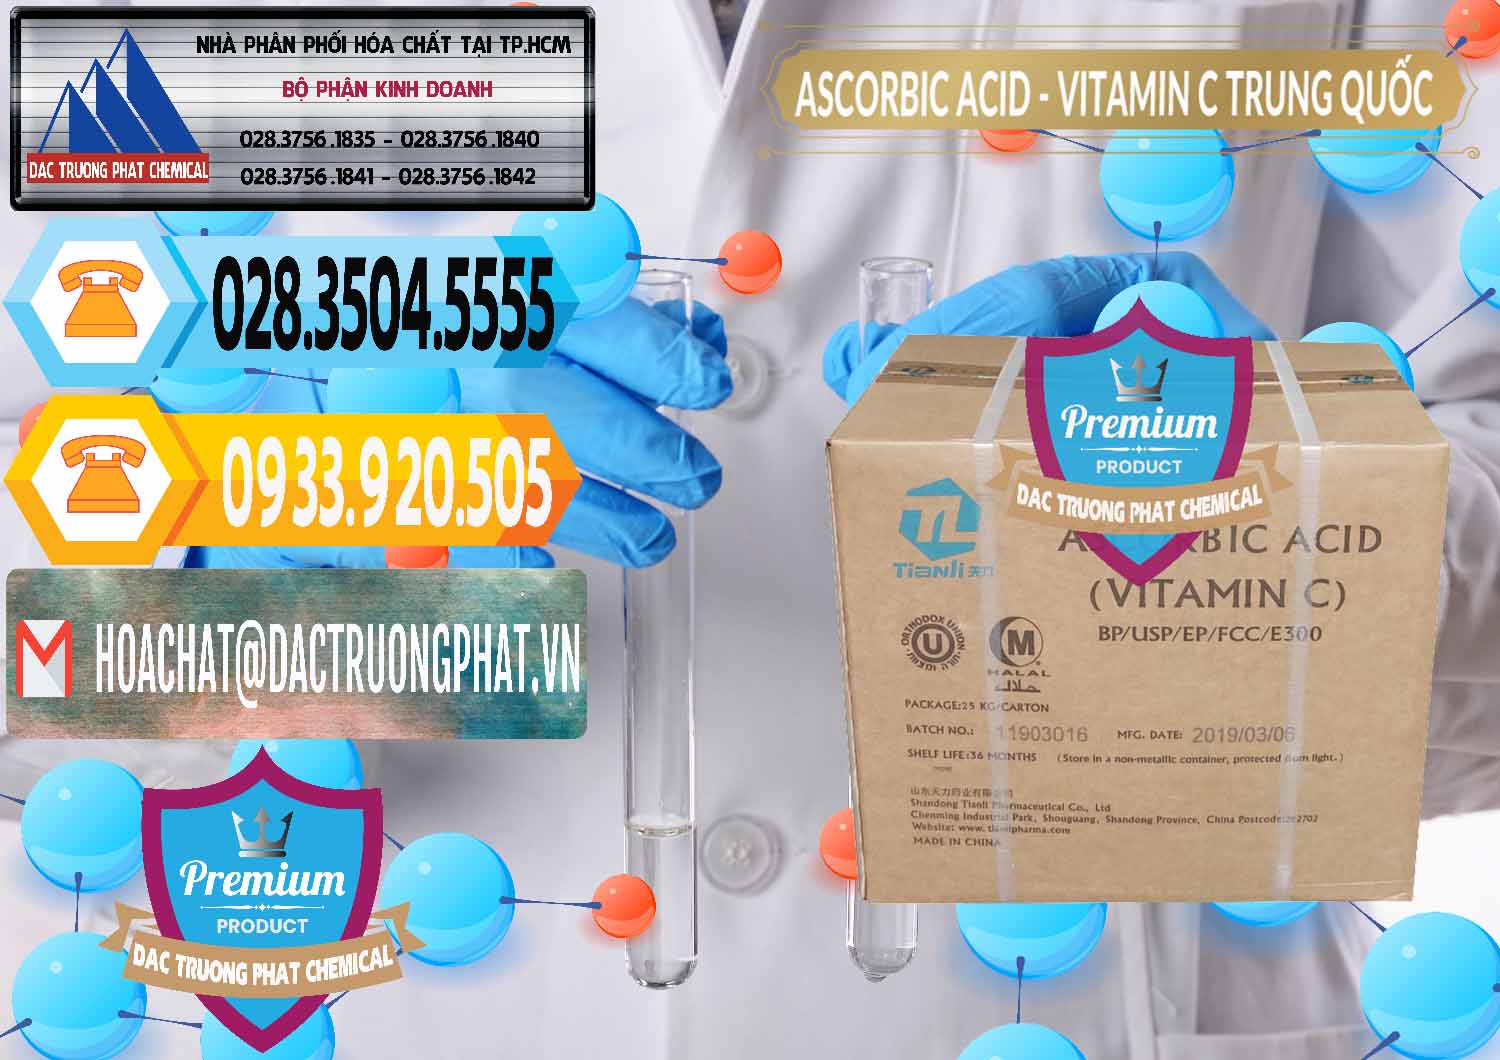 Cty chuyên cung cấp _ bán Axit Ascorbic - Vitamin C Trung Quốc China - 0309 - Cty phân phối & cung cấp hóa chất tại TP.HCM - hoachattayrua.net